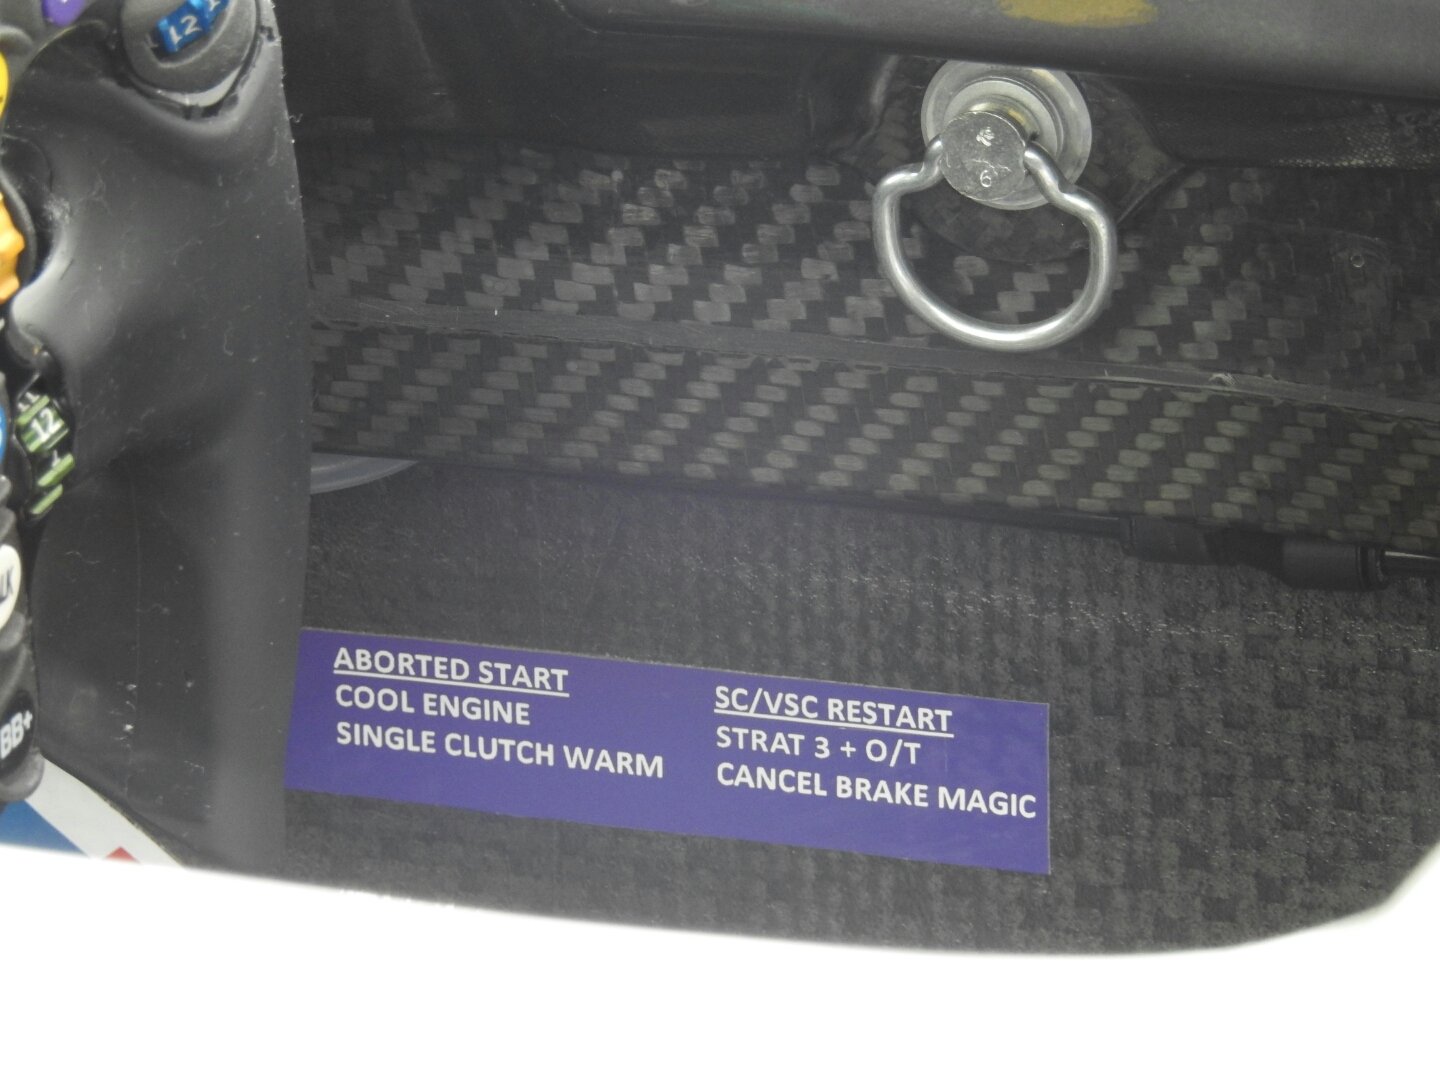 سامانه Brake magic در اتومبیل مرسدس که ترمزها را سریعتر گرم می کند. این تصویر قدیمی و مربوط به اتومبیل نیکو روزبرگ است.